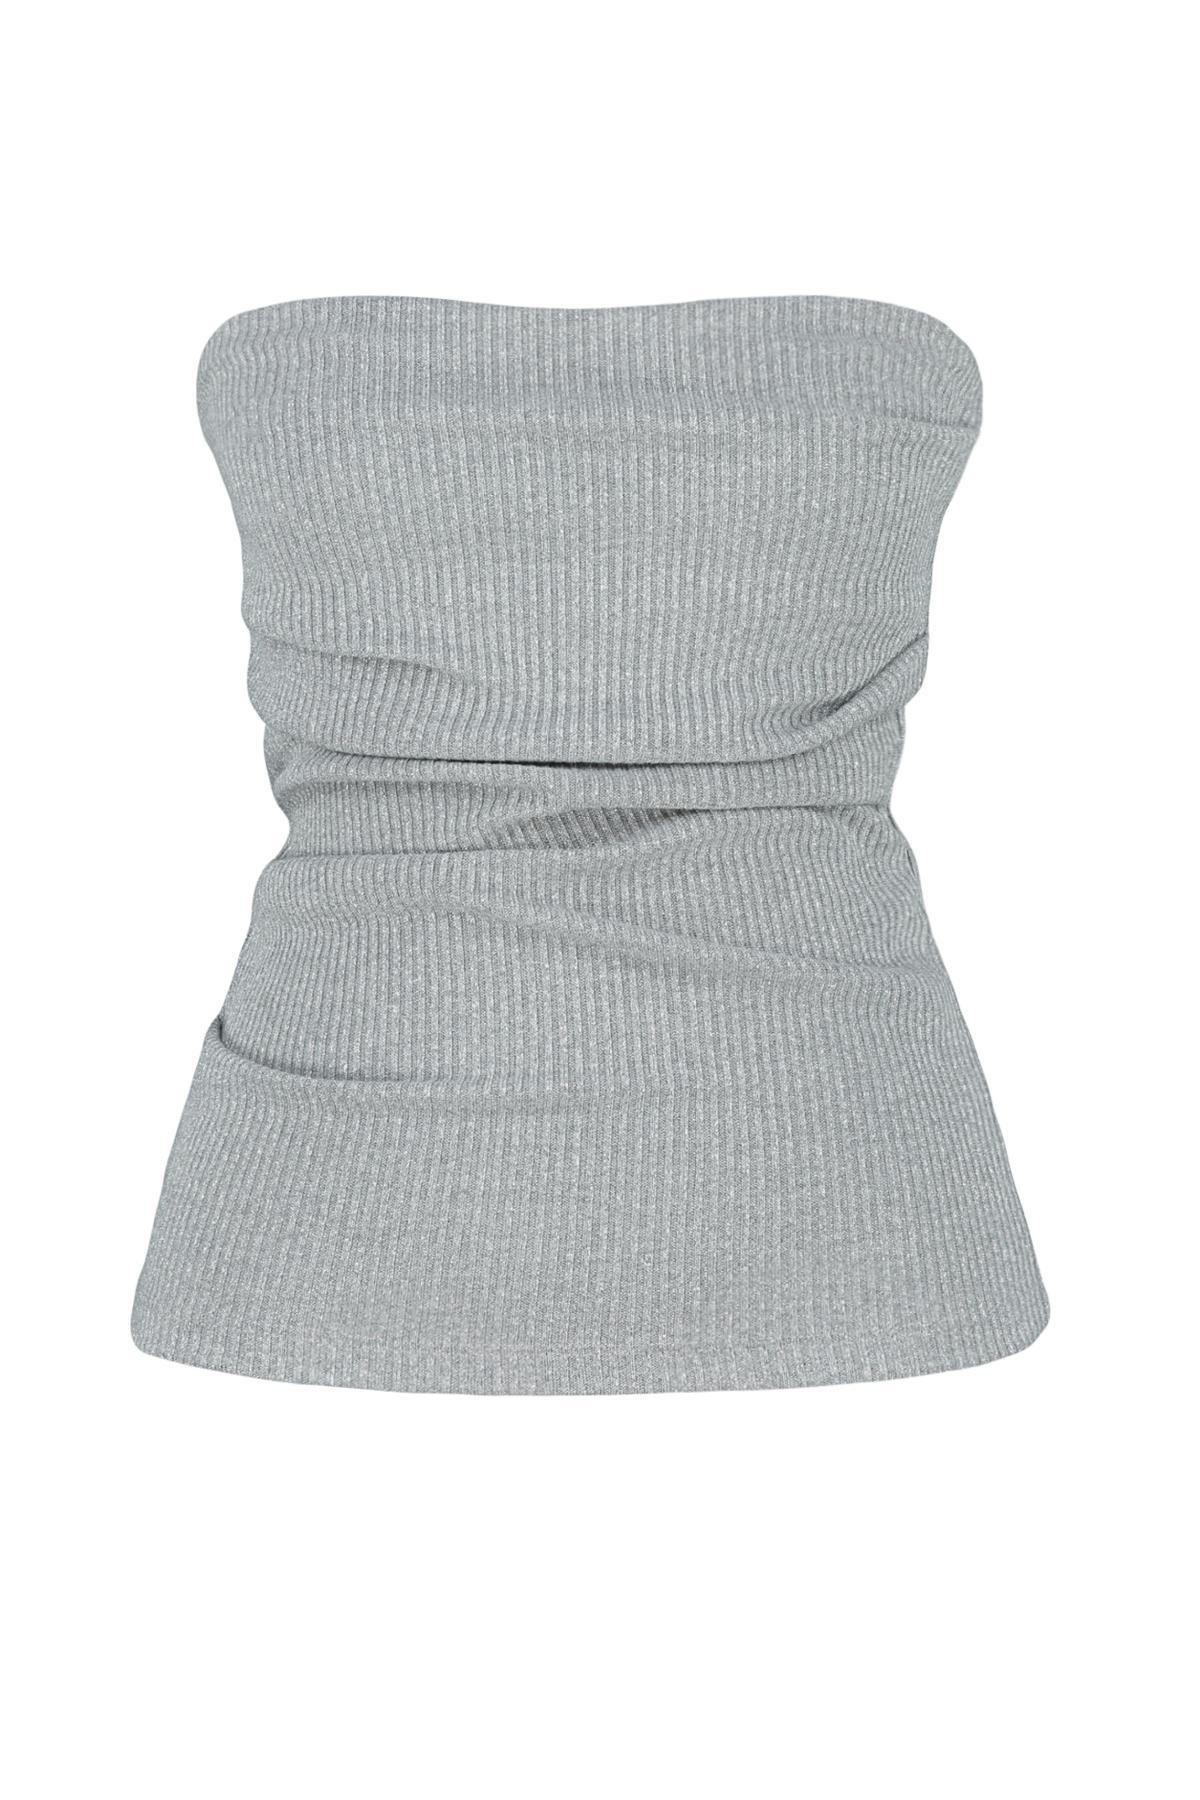 Trendyol - Gray Strapless Elastic Knitted Blouse